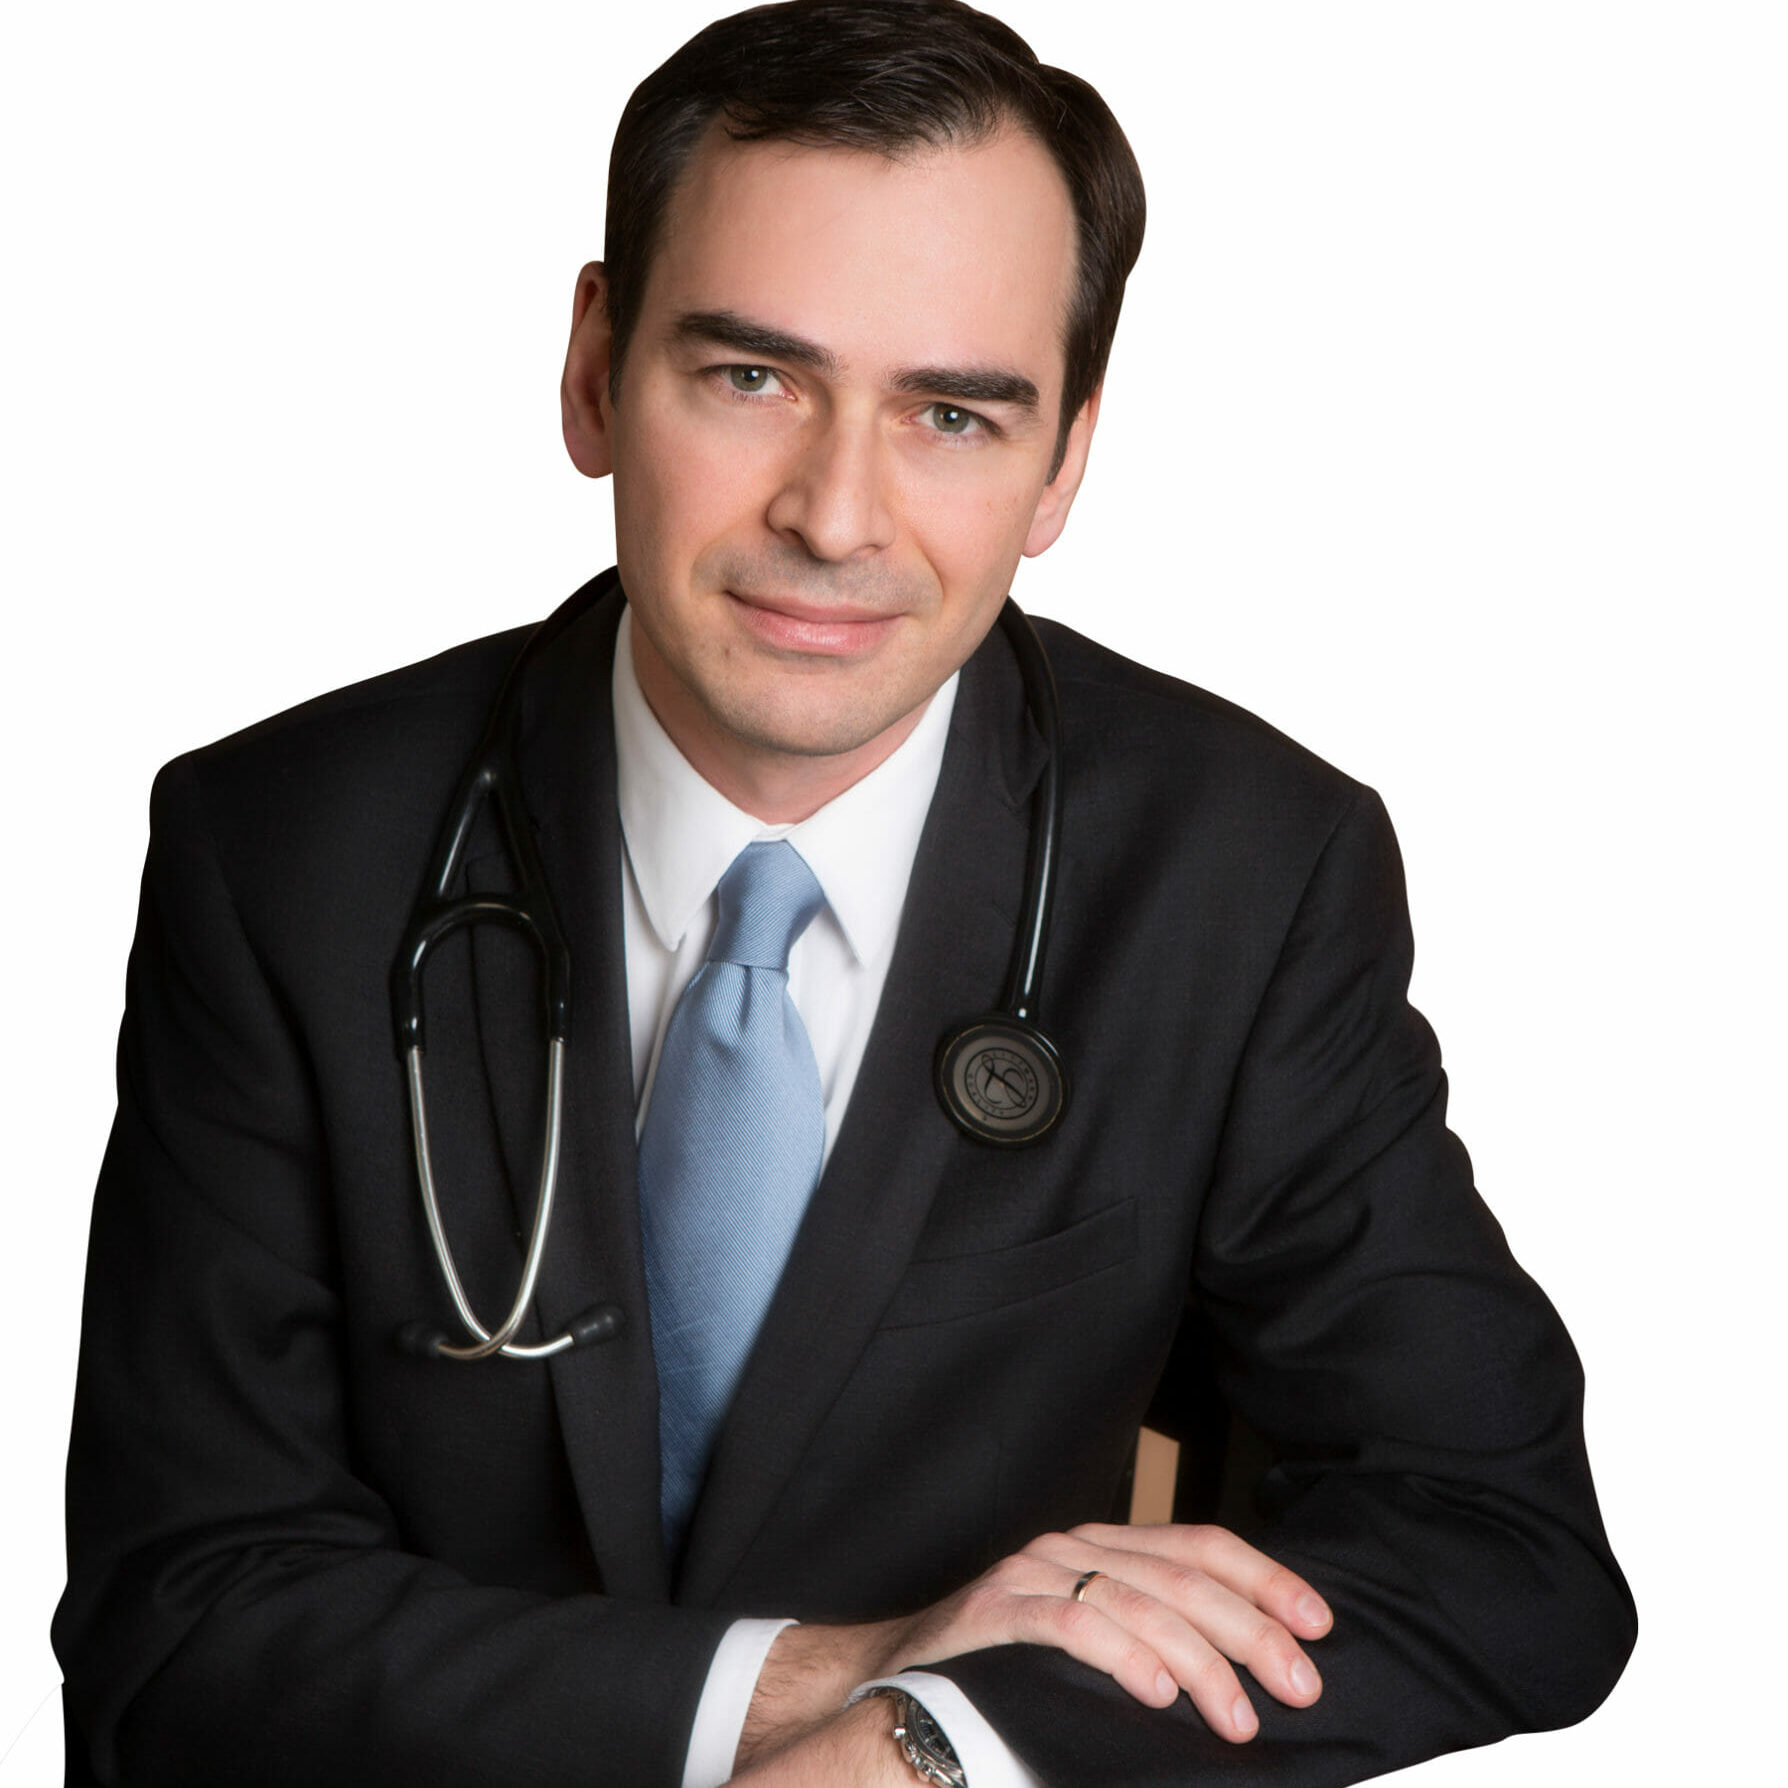 A portrait image of Dr Karagiannis